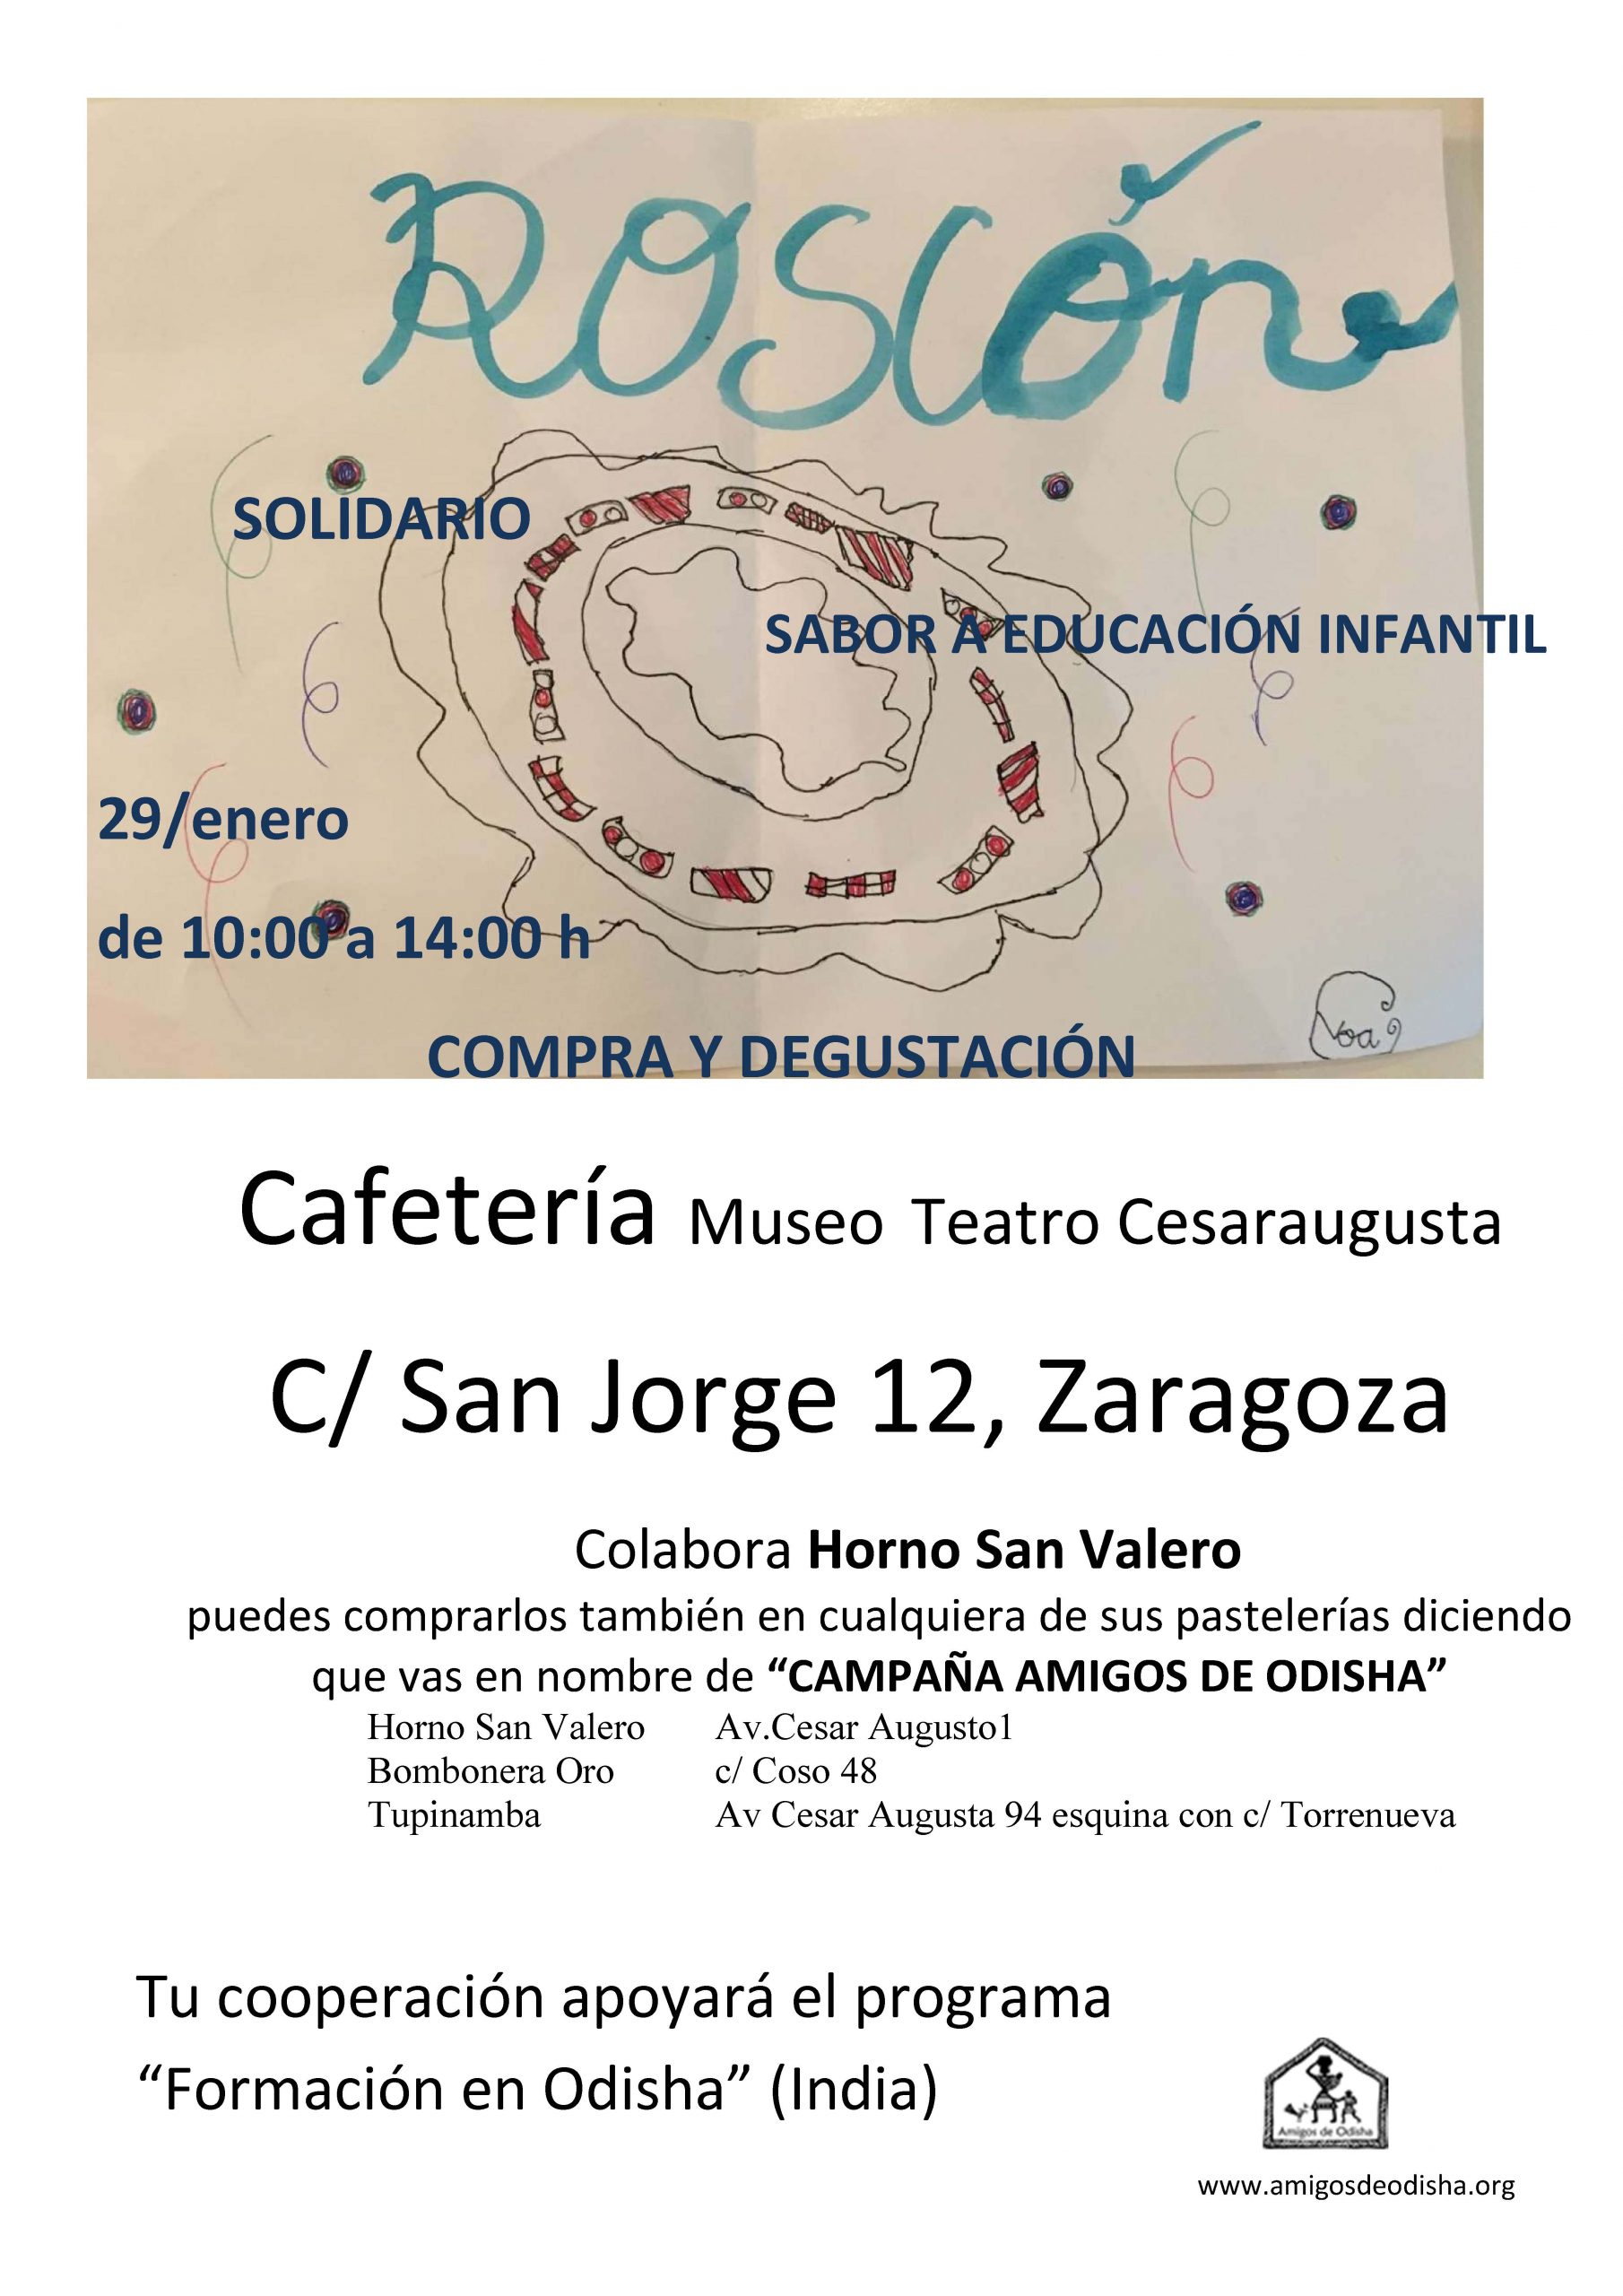 Roscón solidario en Zaragoza_2020